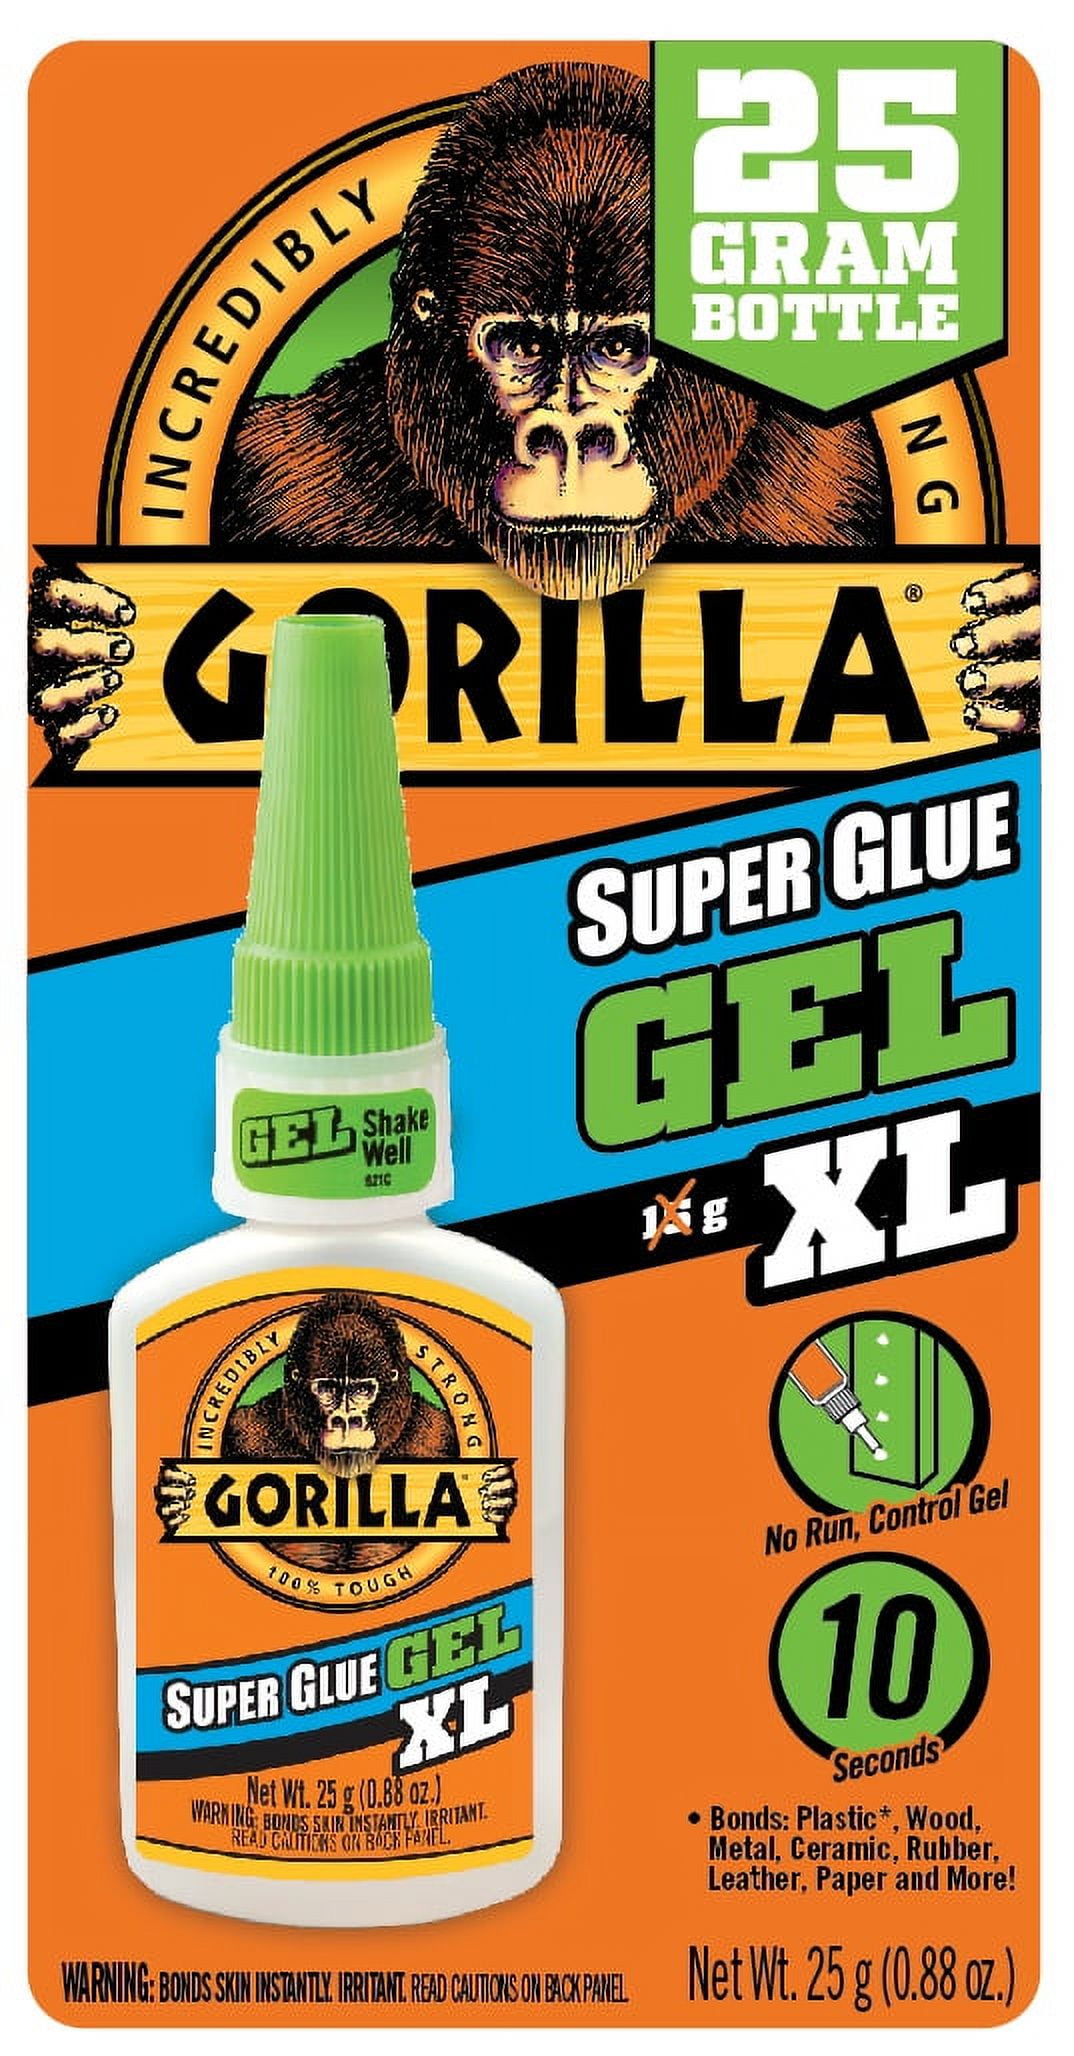 Gorilla Glue Impact-Tough Super Glue 78007, 16 oz Bottle, Clear